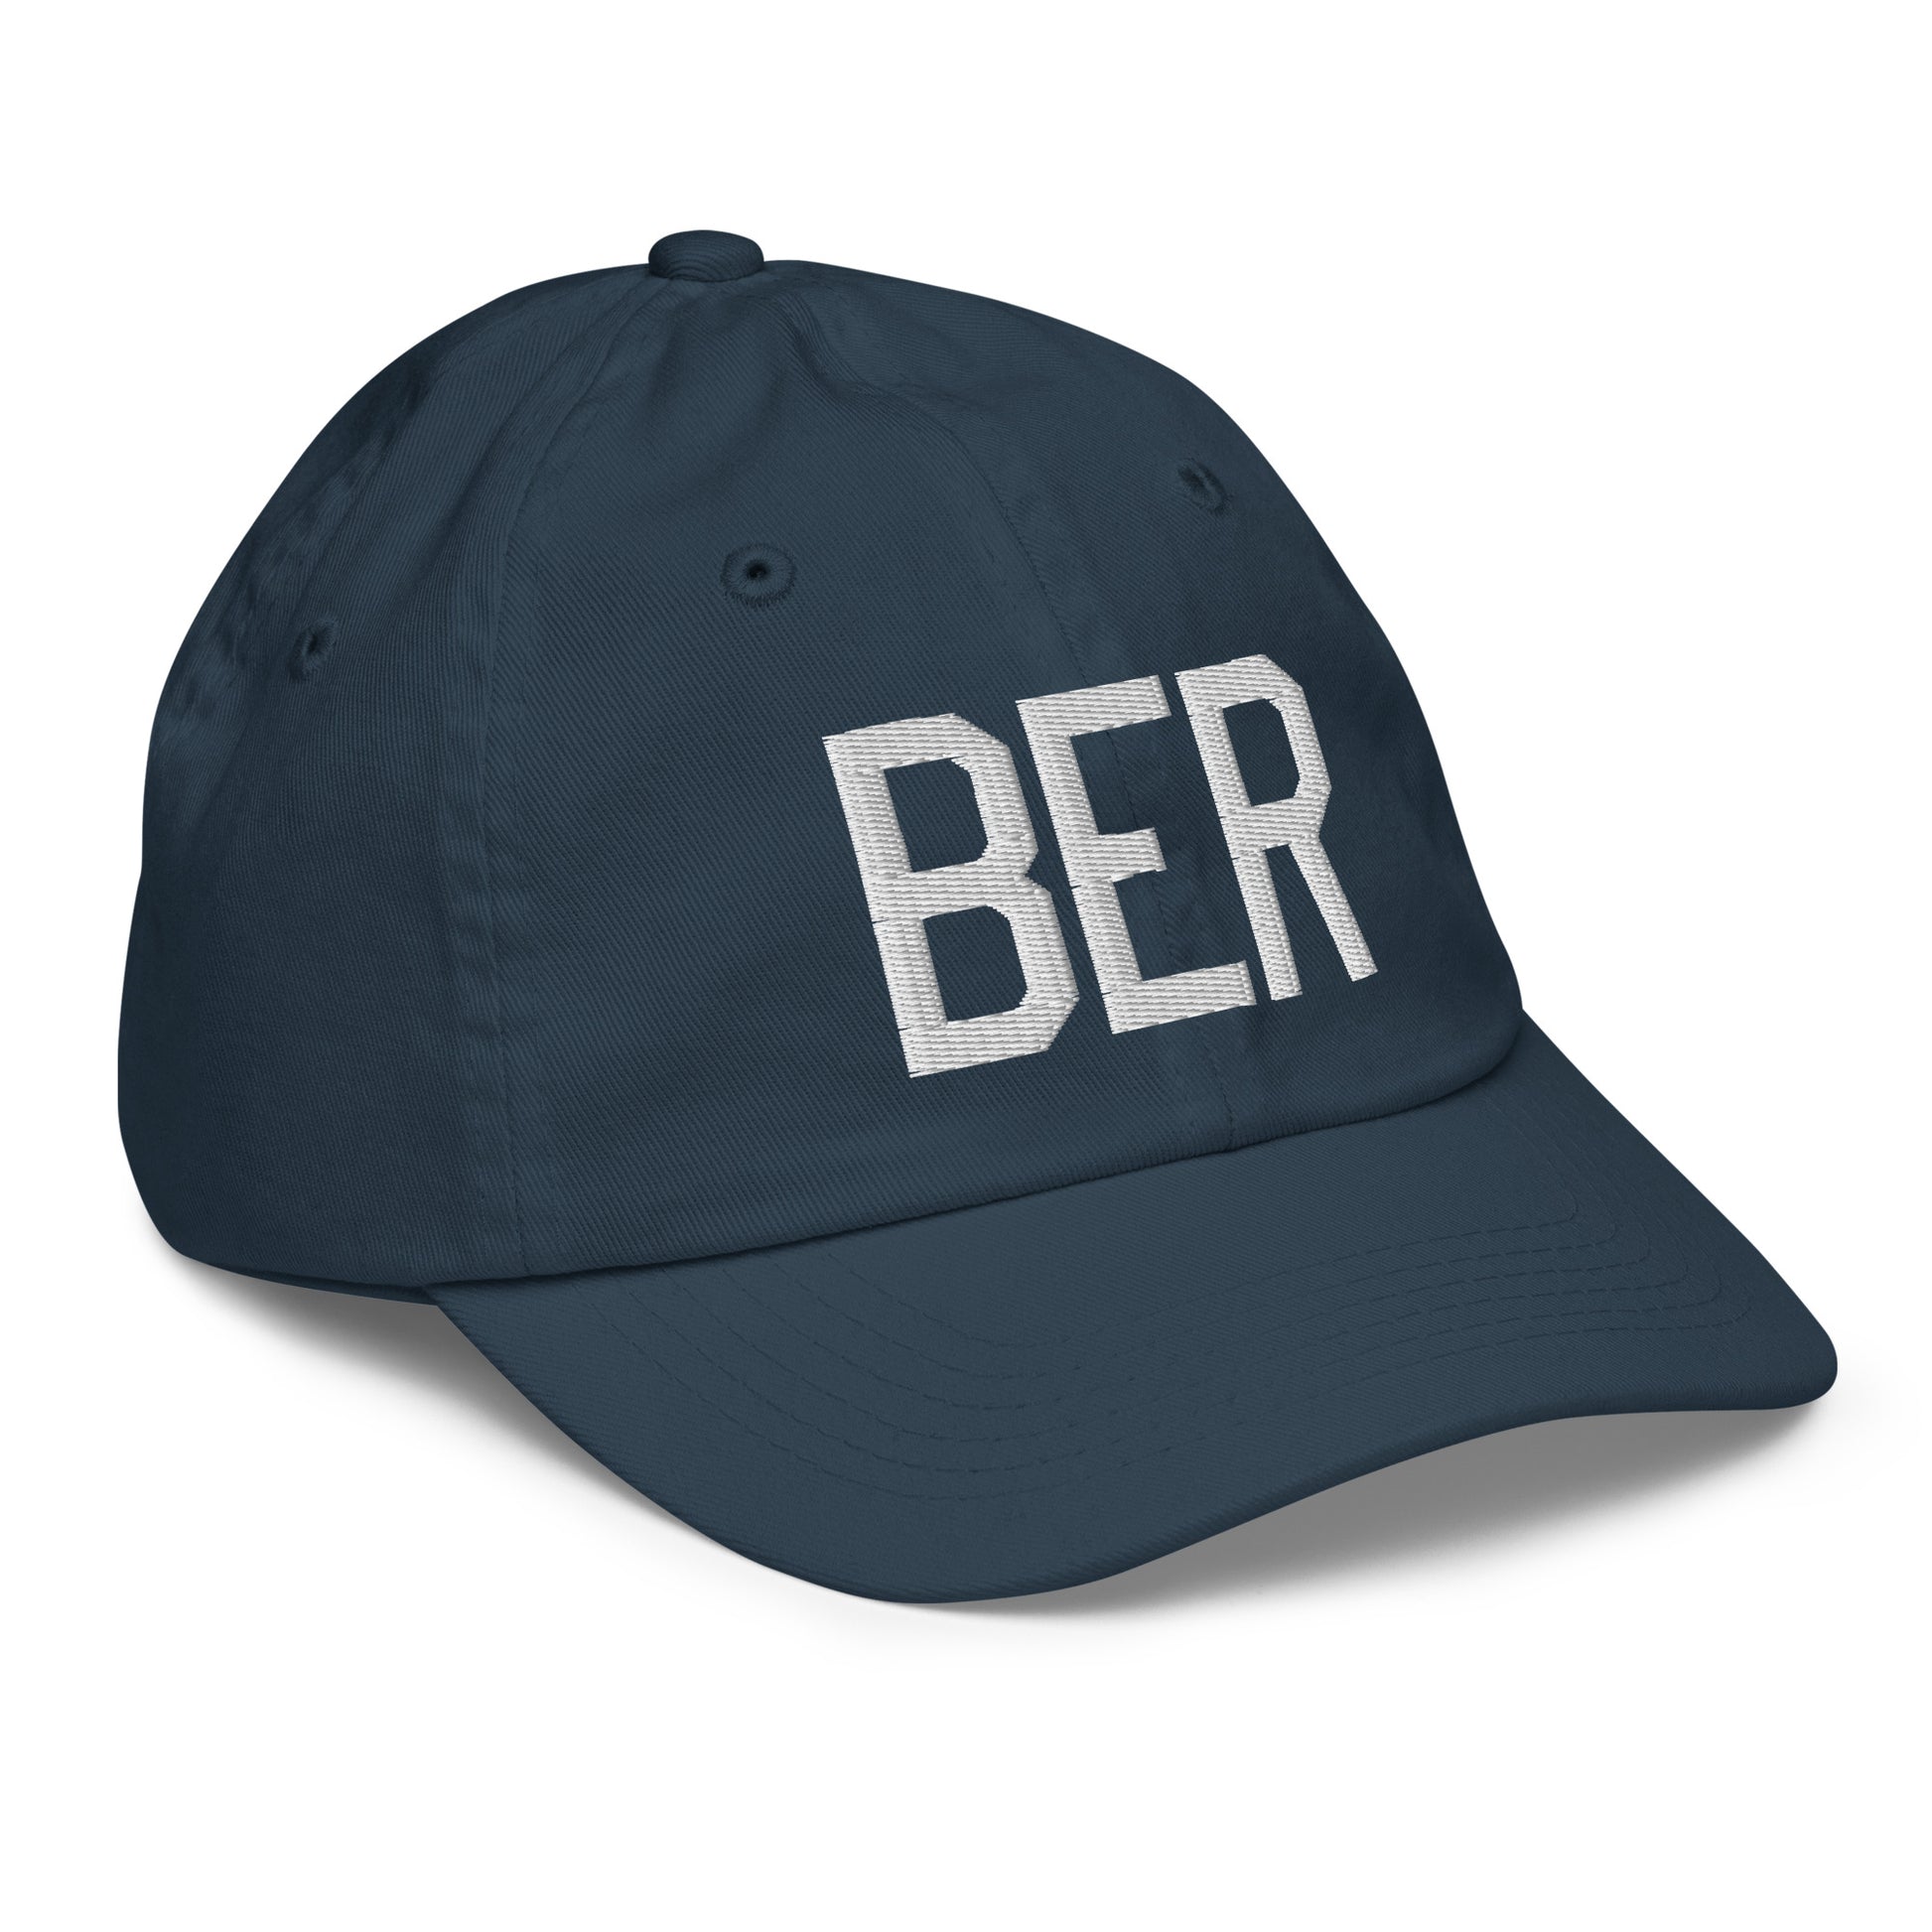 Airport Code Kid's Baseball Cap - White • BER Berlin • YHM Designs - Image 15